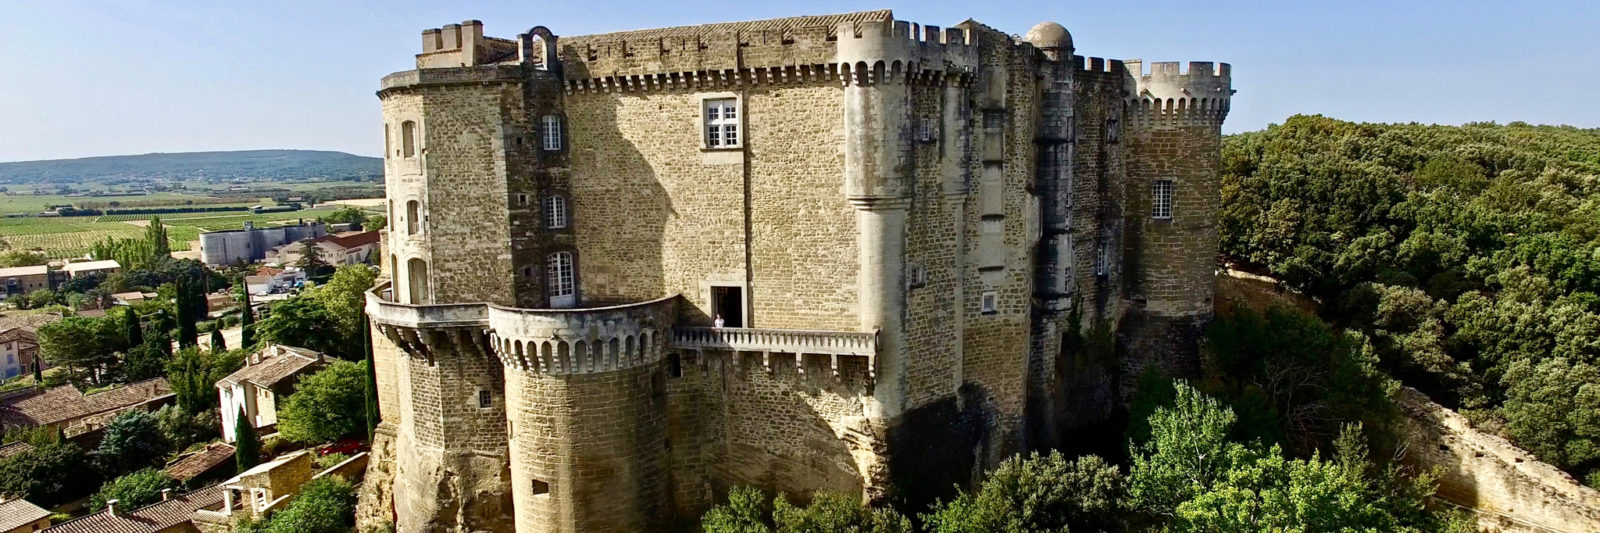 Château de Suze la Rousse